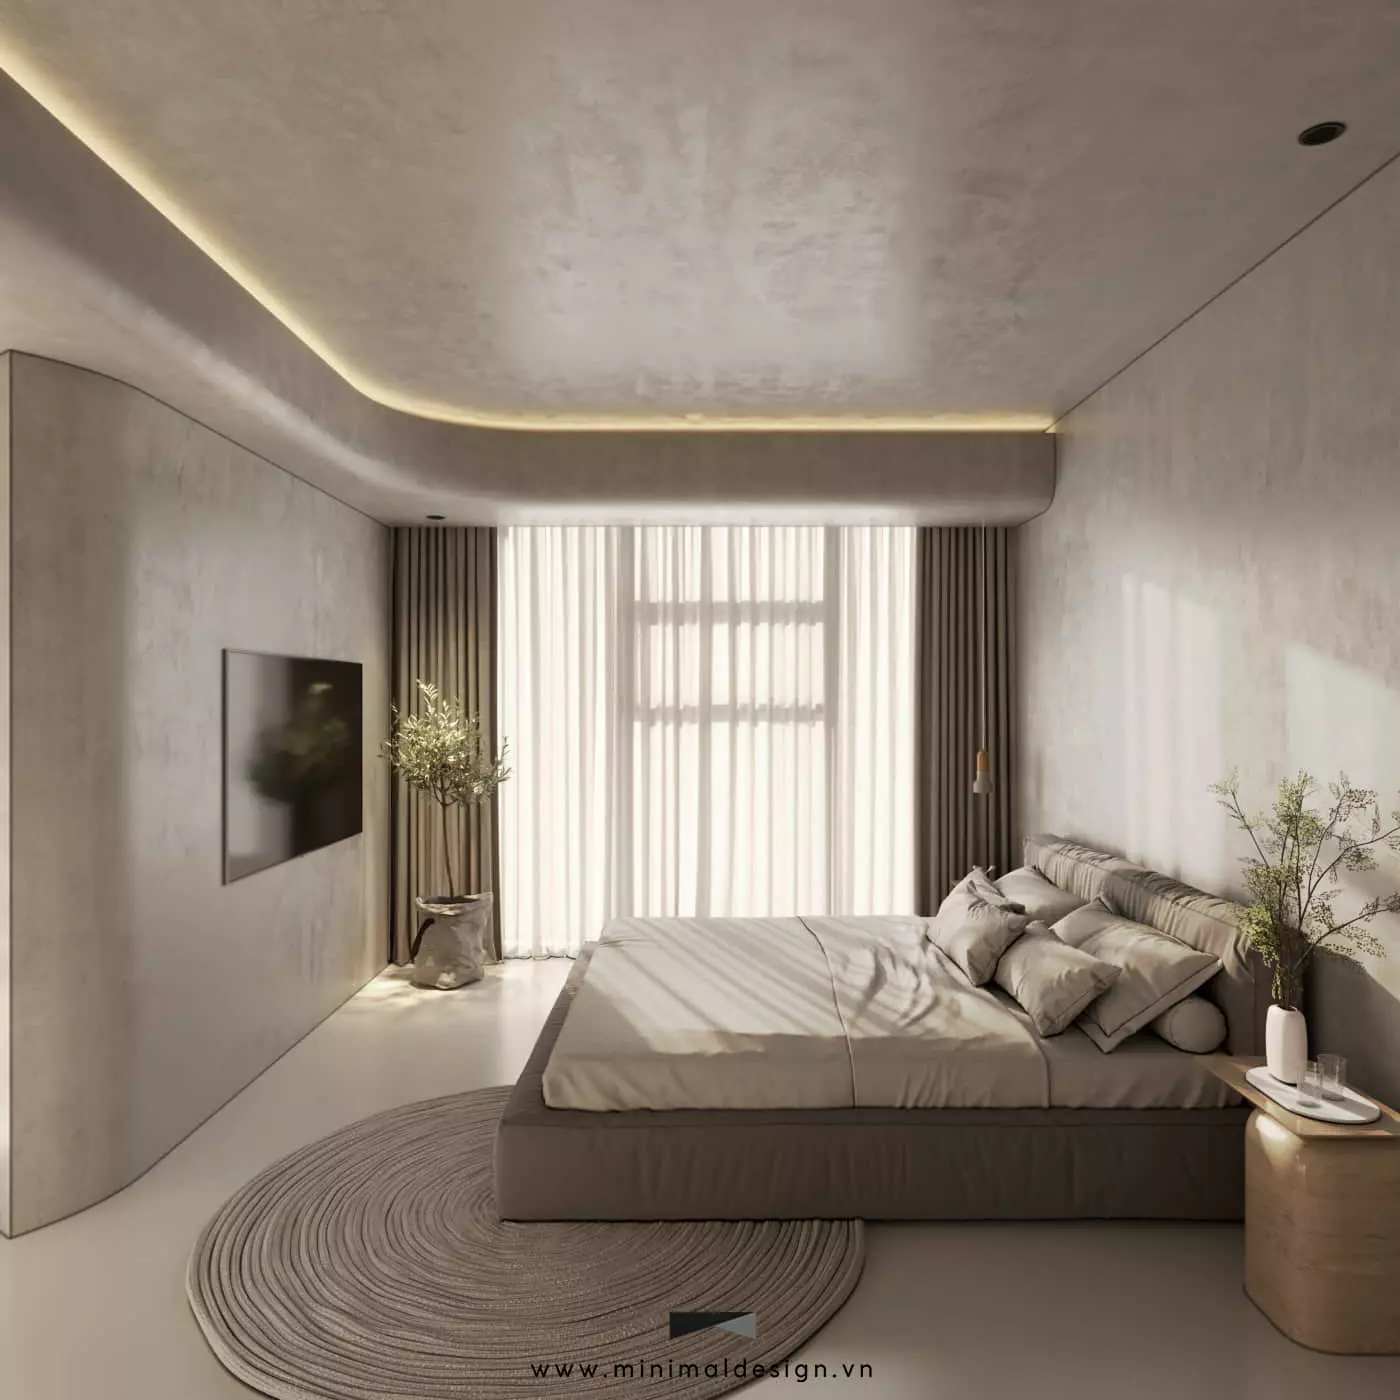 Phong cách tối giản trong nội thất và 4 điều cơ bản cần biết để tạo nên không gian sống đúng chuẩn tinh giản và thông thoáng, đưa cái tôi vào ngôi nhà.